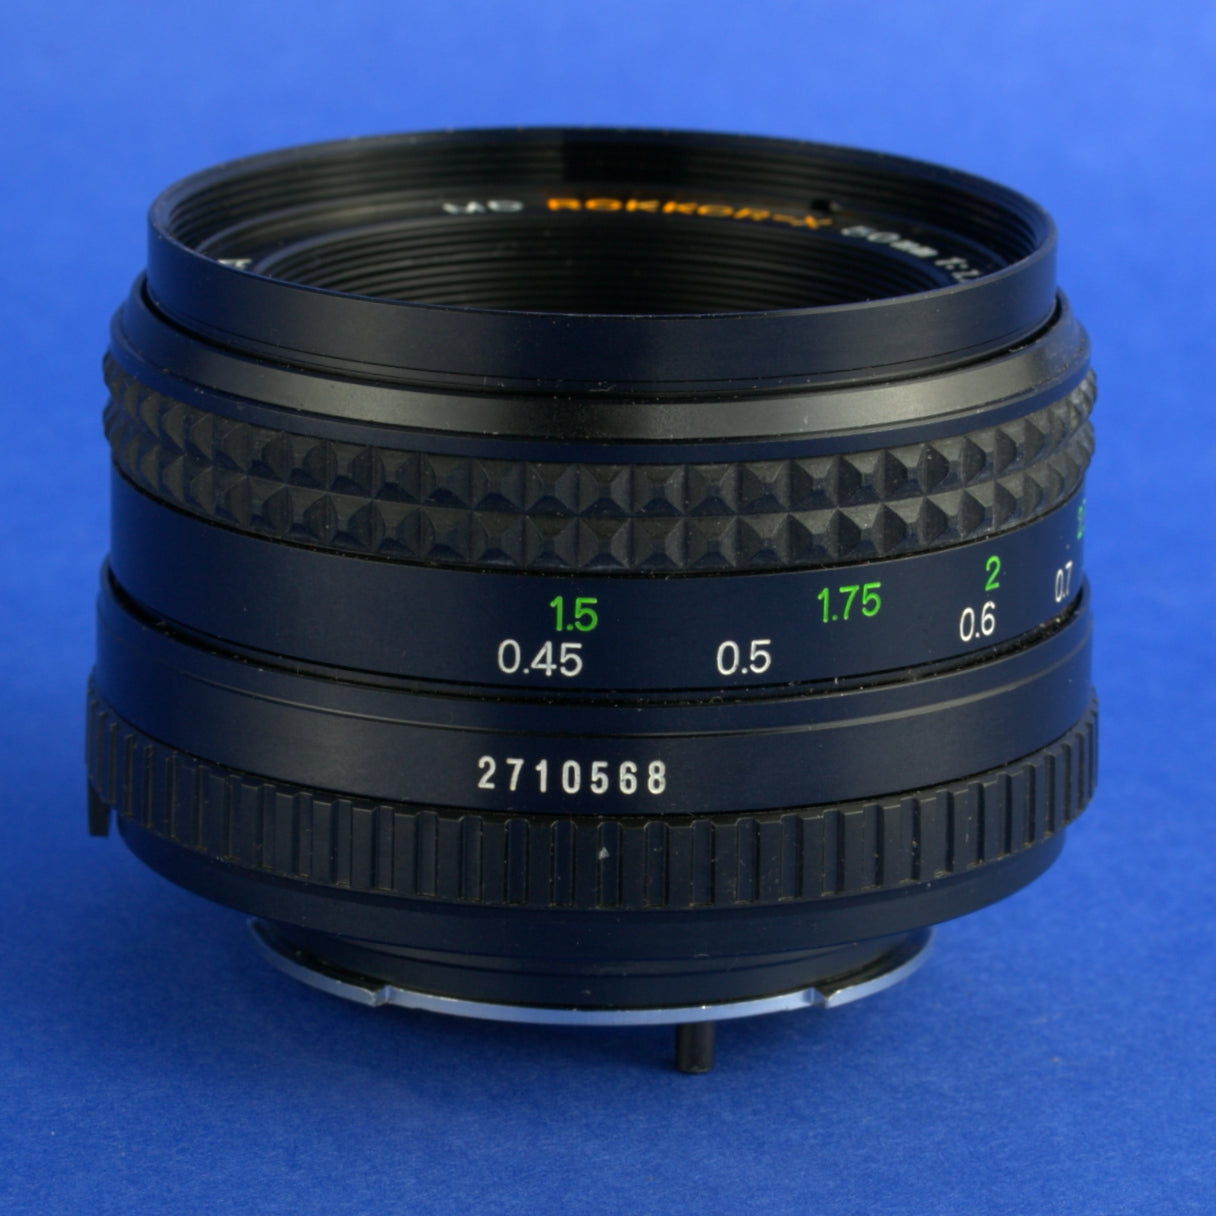 Minolta MD 50mm 1.7 Lens